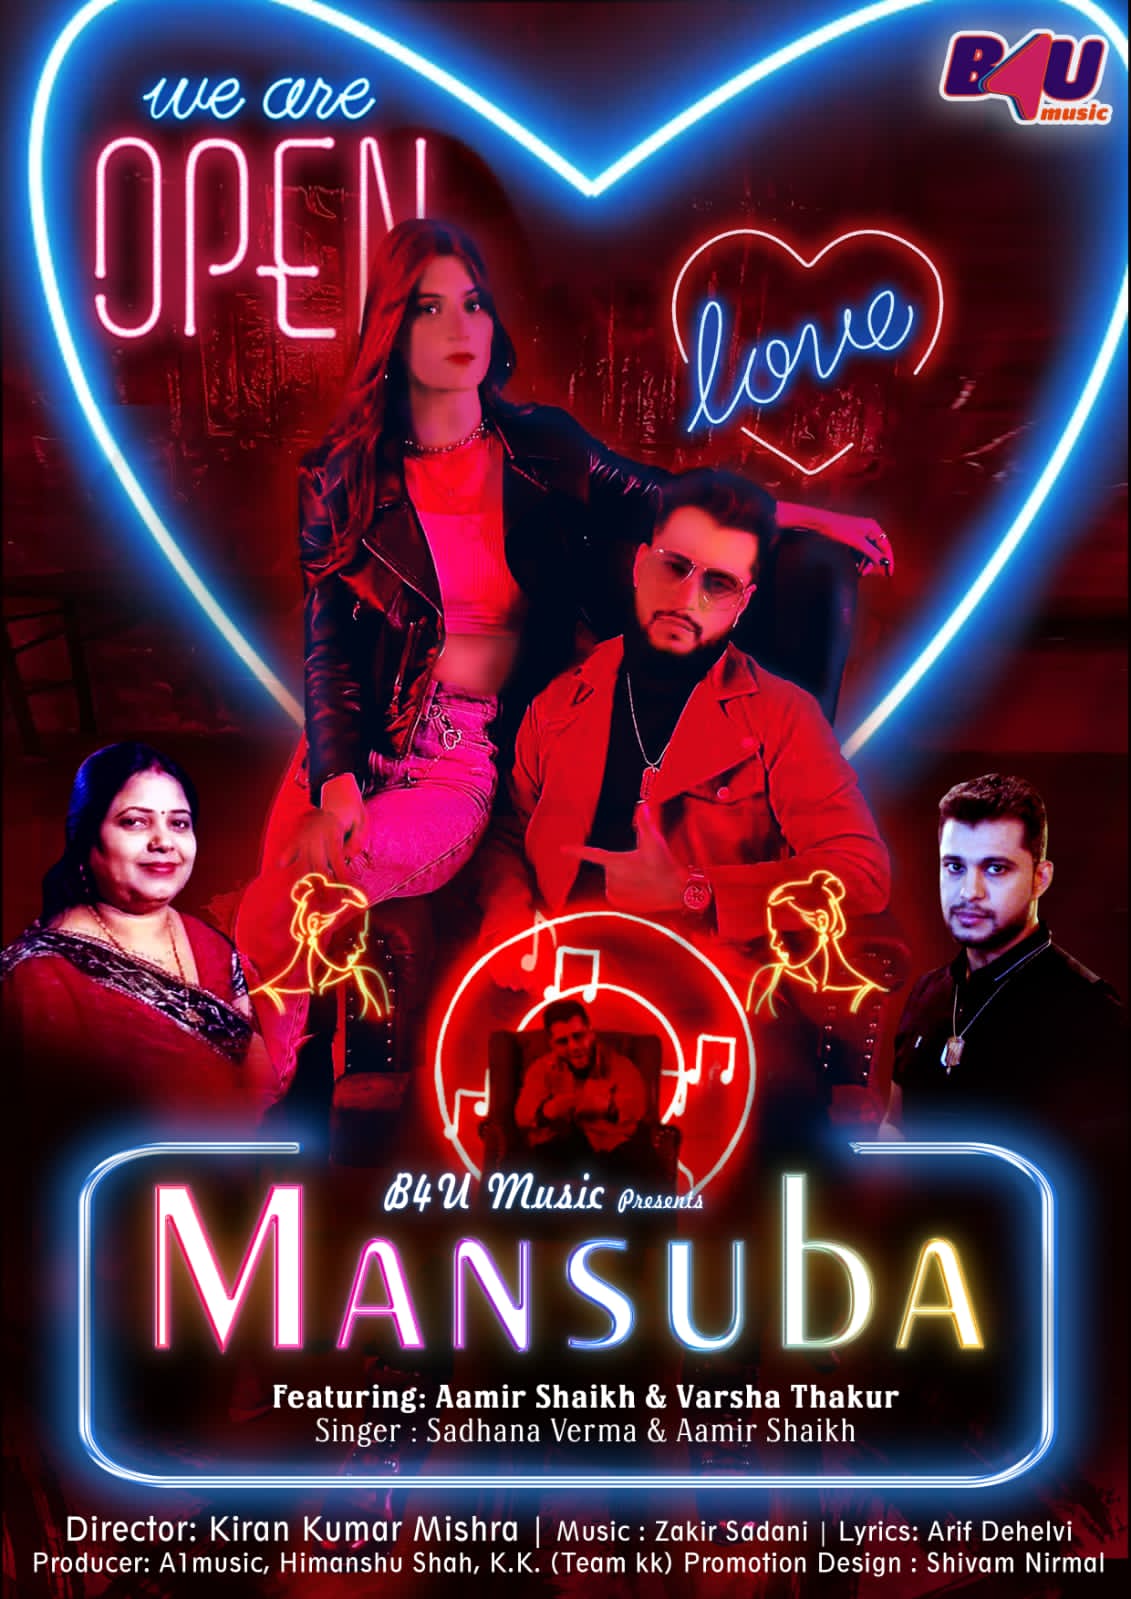 बॉलीवुड न्यूज़ : गायक आमिर शेख और साधना वर्मा का नया गाना "मंसूबा" रिलीज़